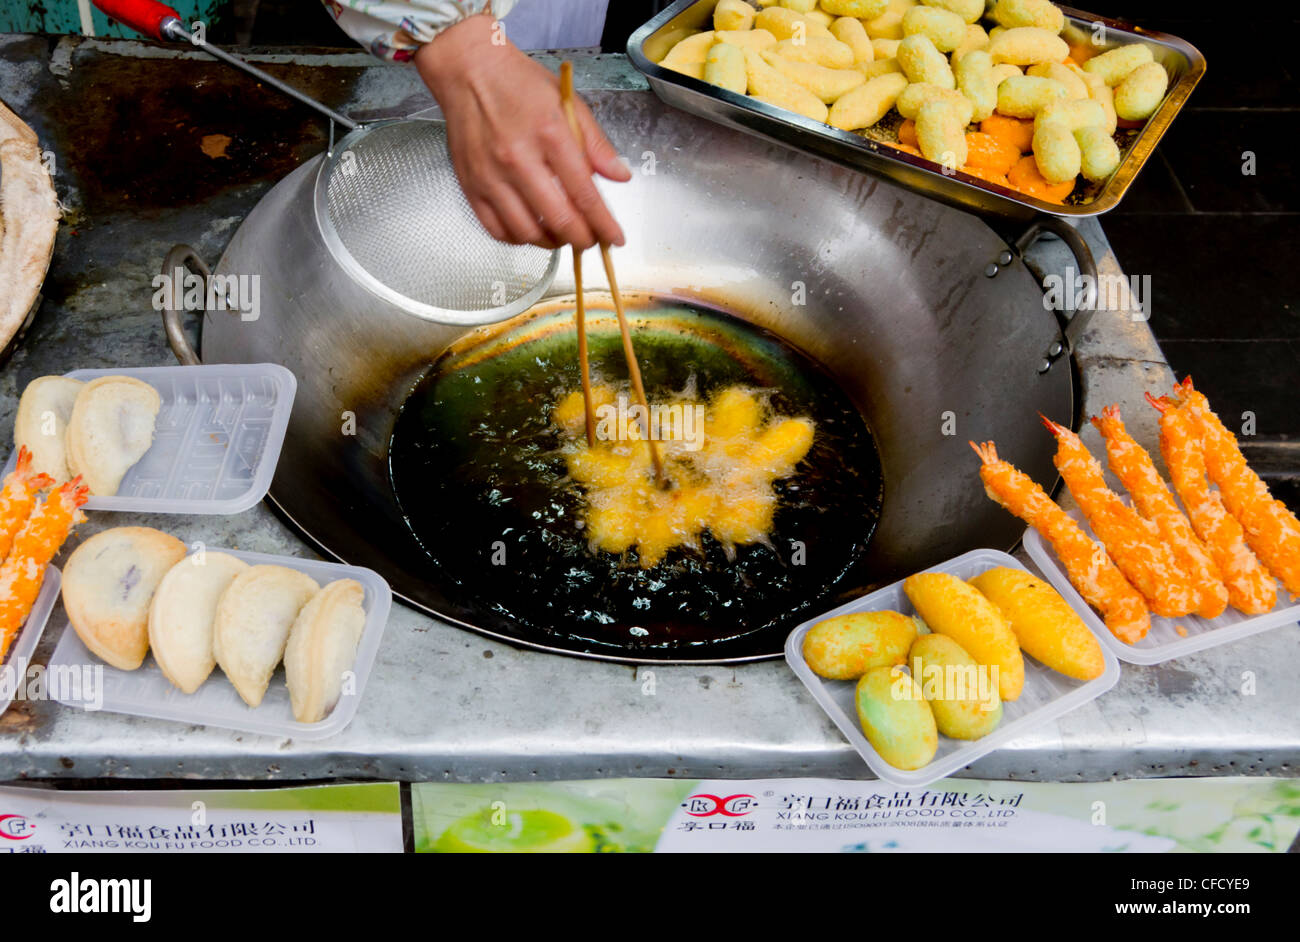 Wenshu Yuan food stall, Chengdu, Sichuan, China, Asia Stock Photo